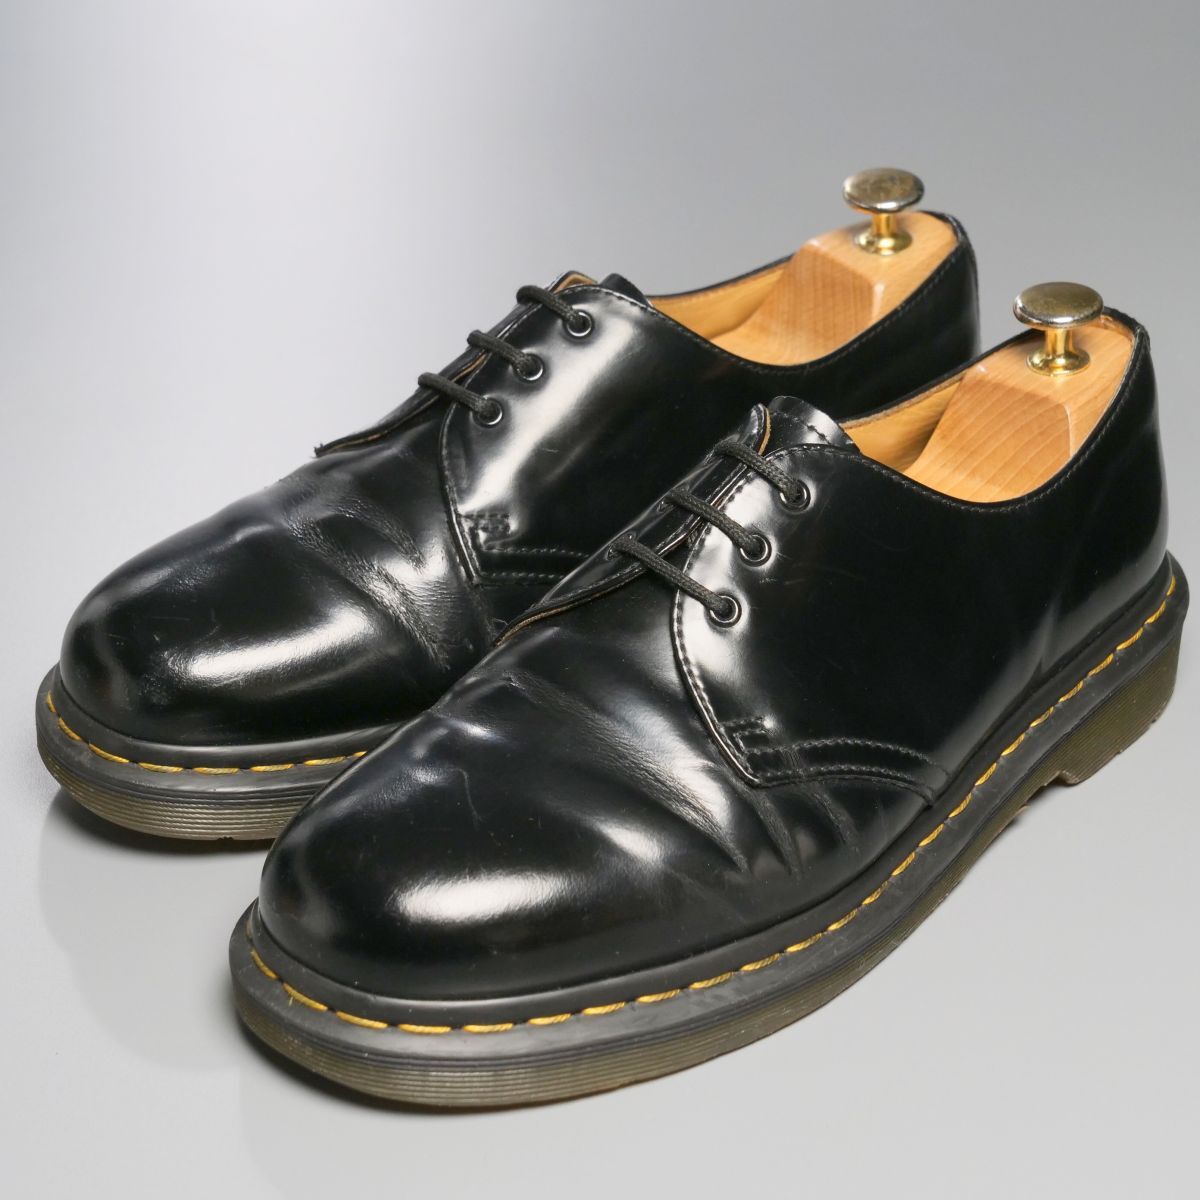 GP4122//*ドクターマーチン/Dr.Martens*1461 59/UK8/プレーントゥ/3ホールシューズ/レザーシューズ/革靴/黒/ブラックの画像2